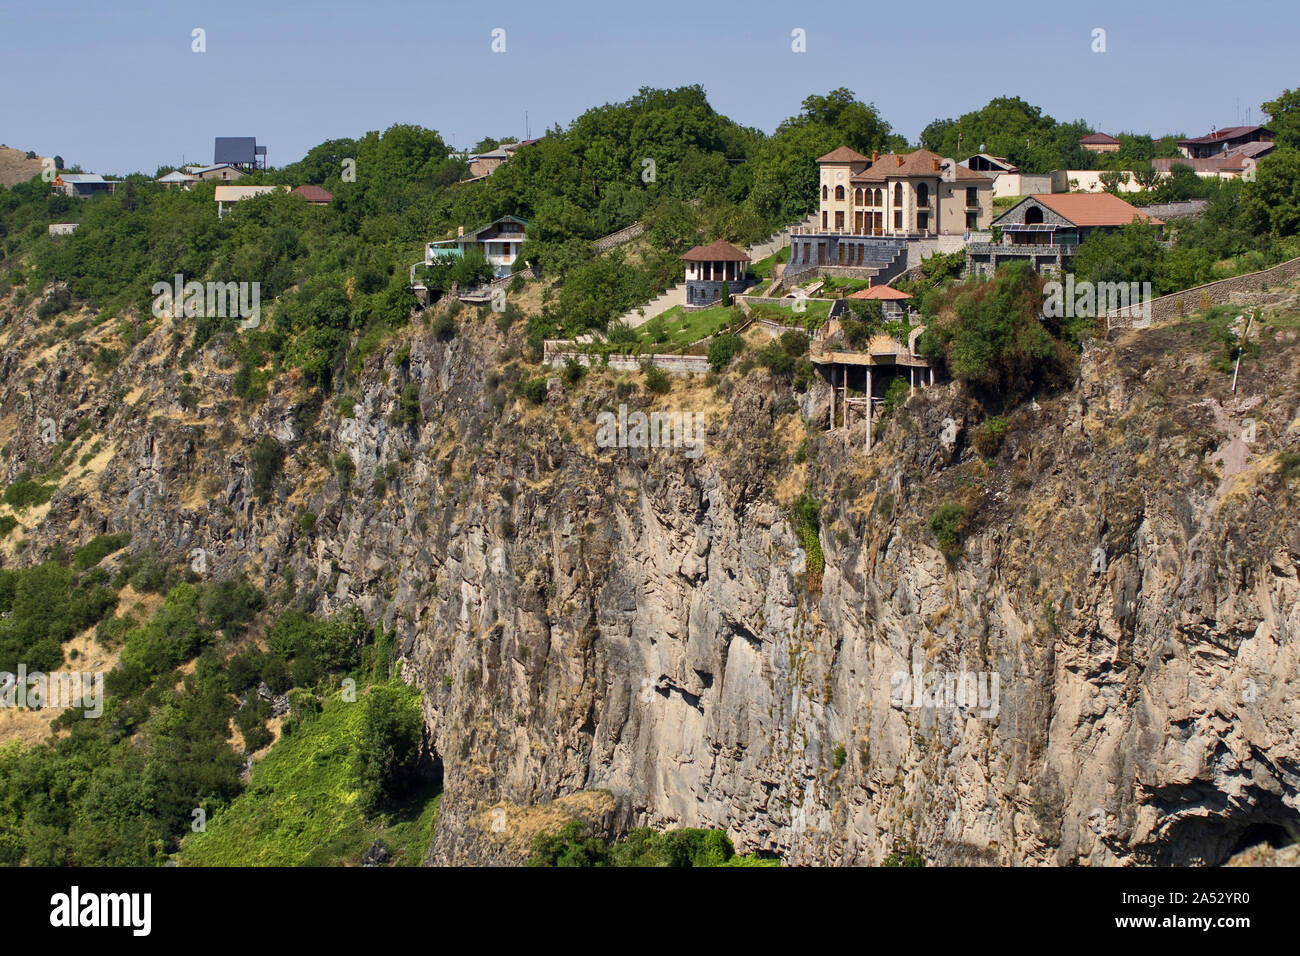 Armenia: Houses on a steep hillside near temple Garni Stock Photo